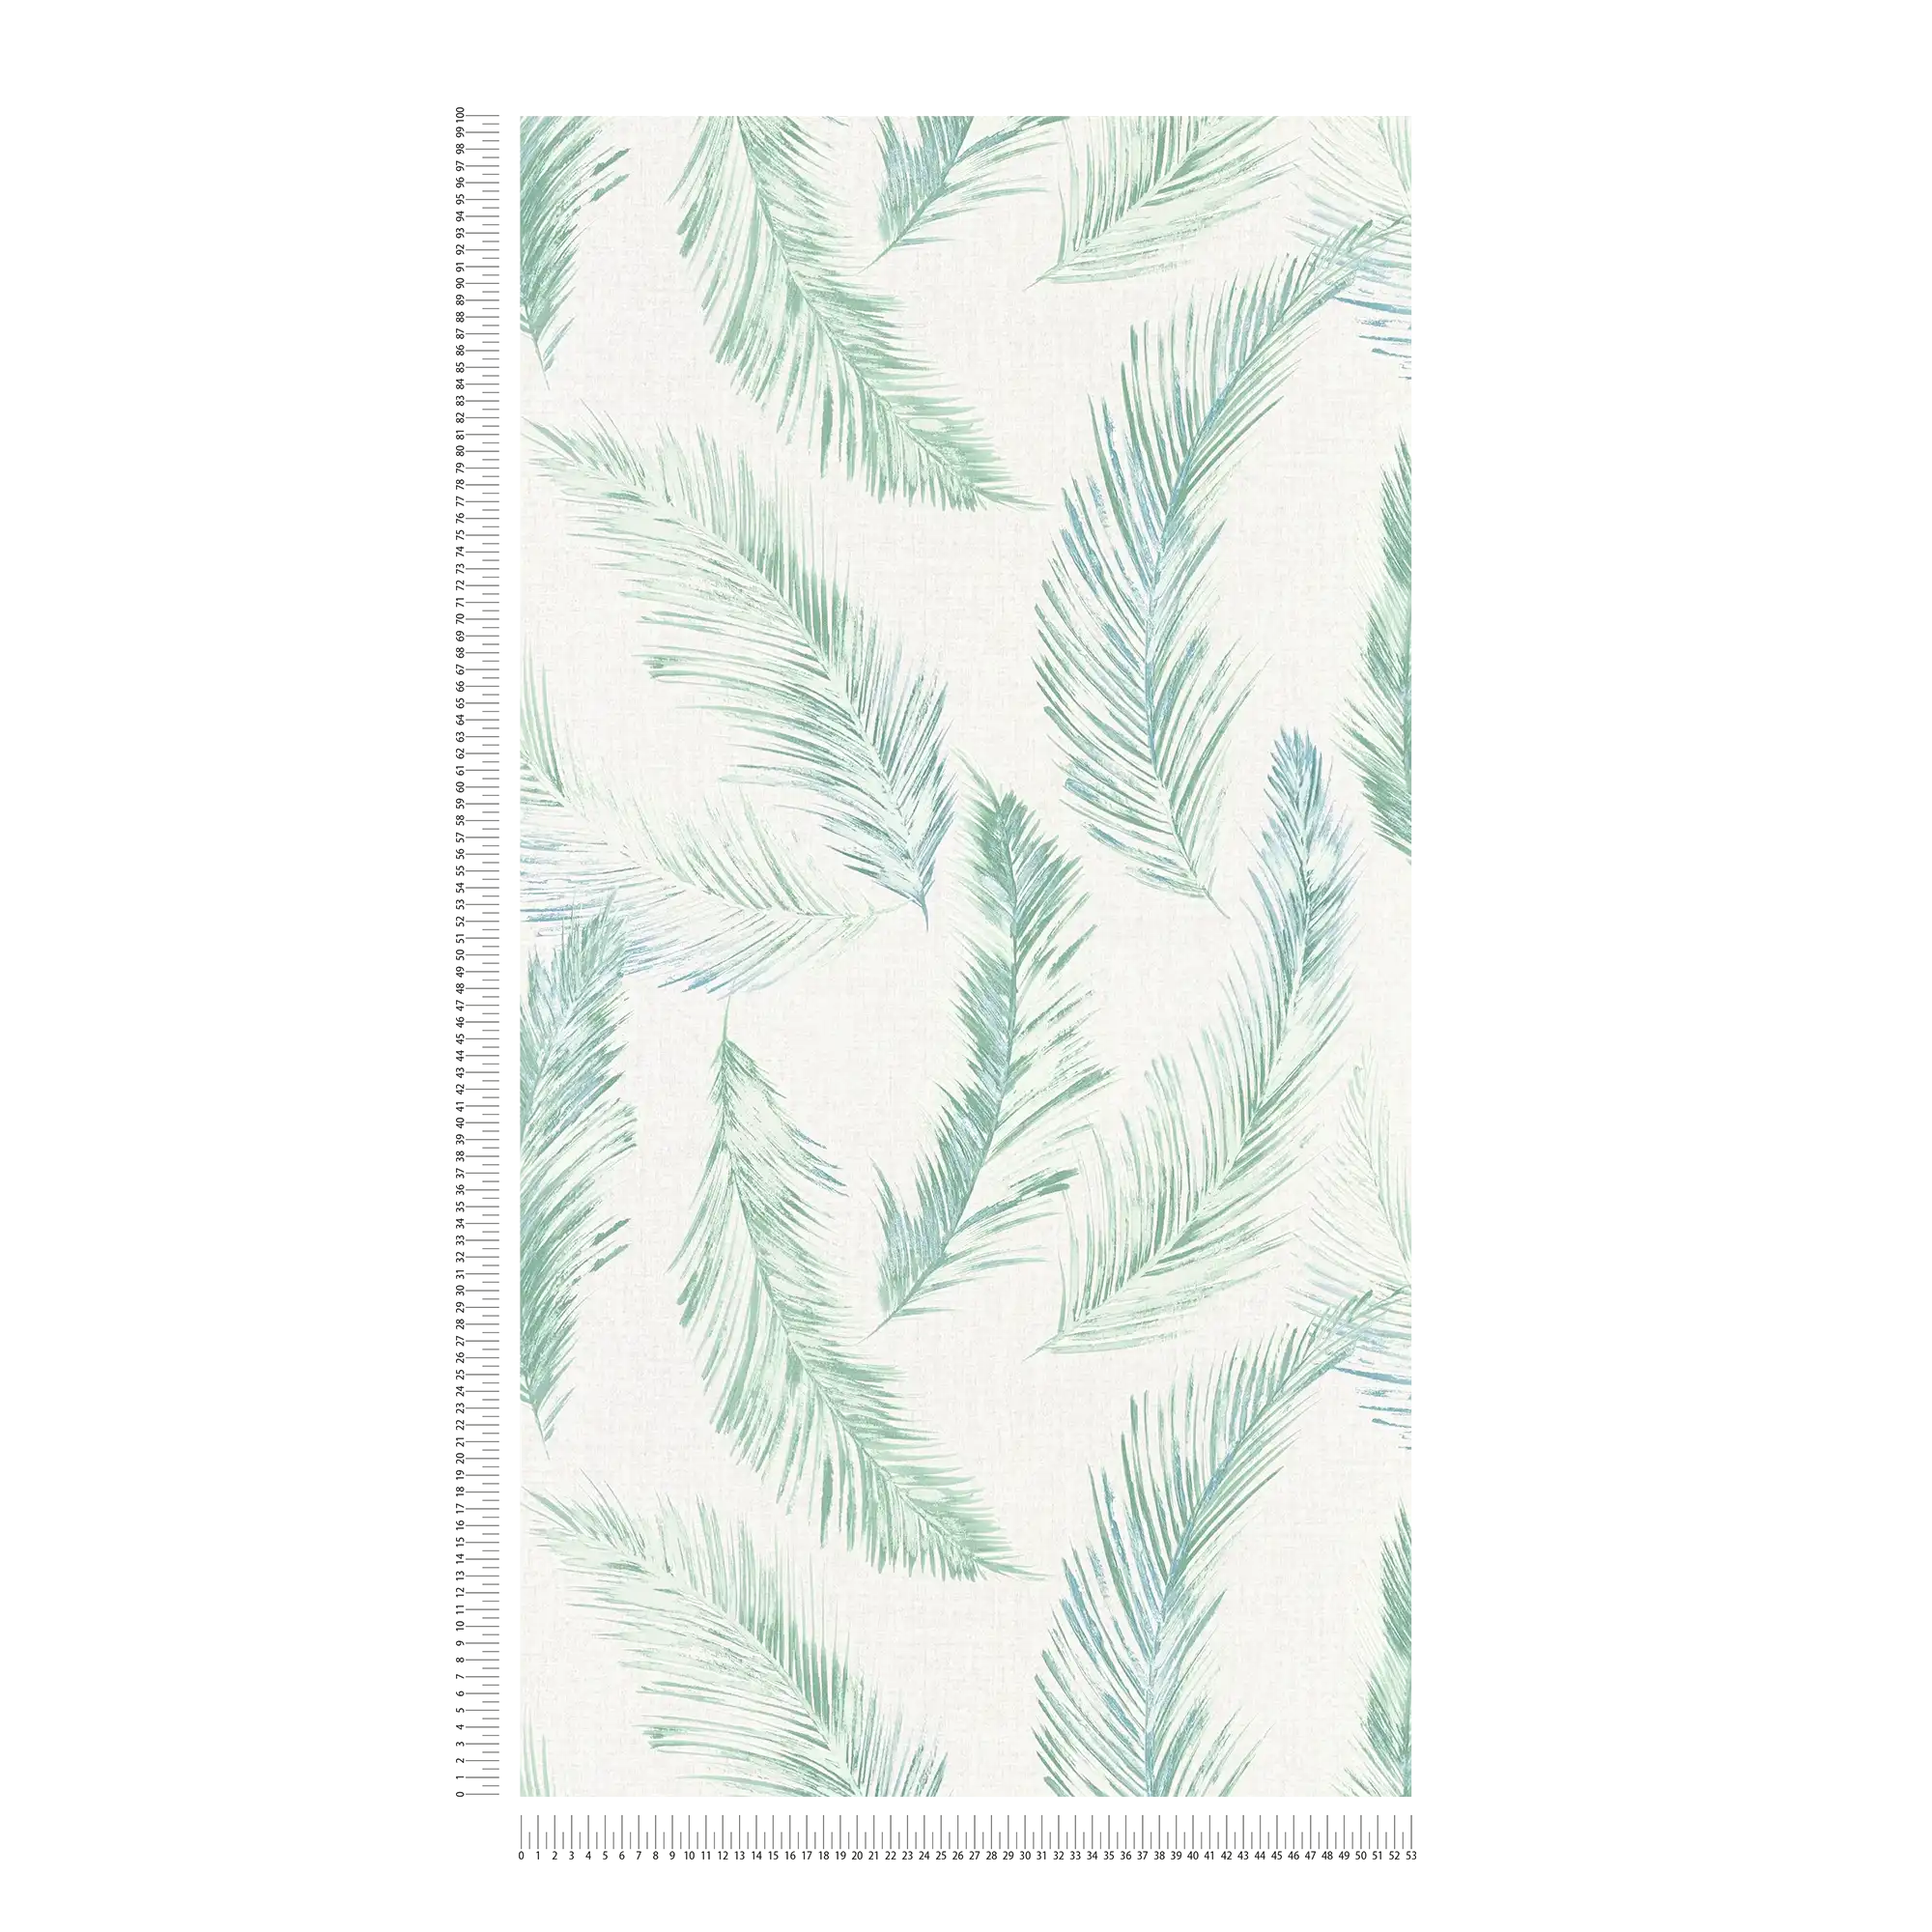             Papier peint intissé Plume Design dans le style aquarelle - bleu, vert
        